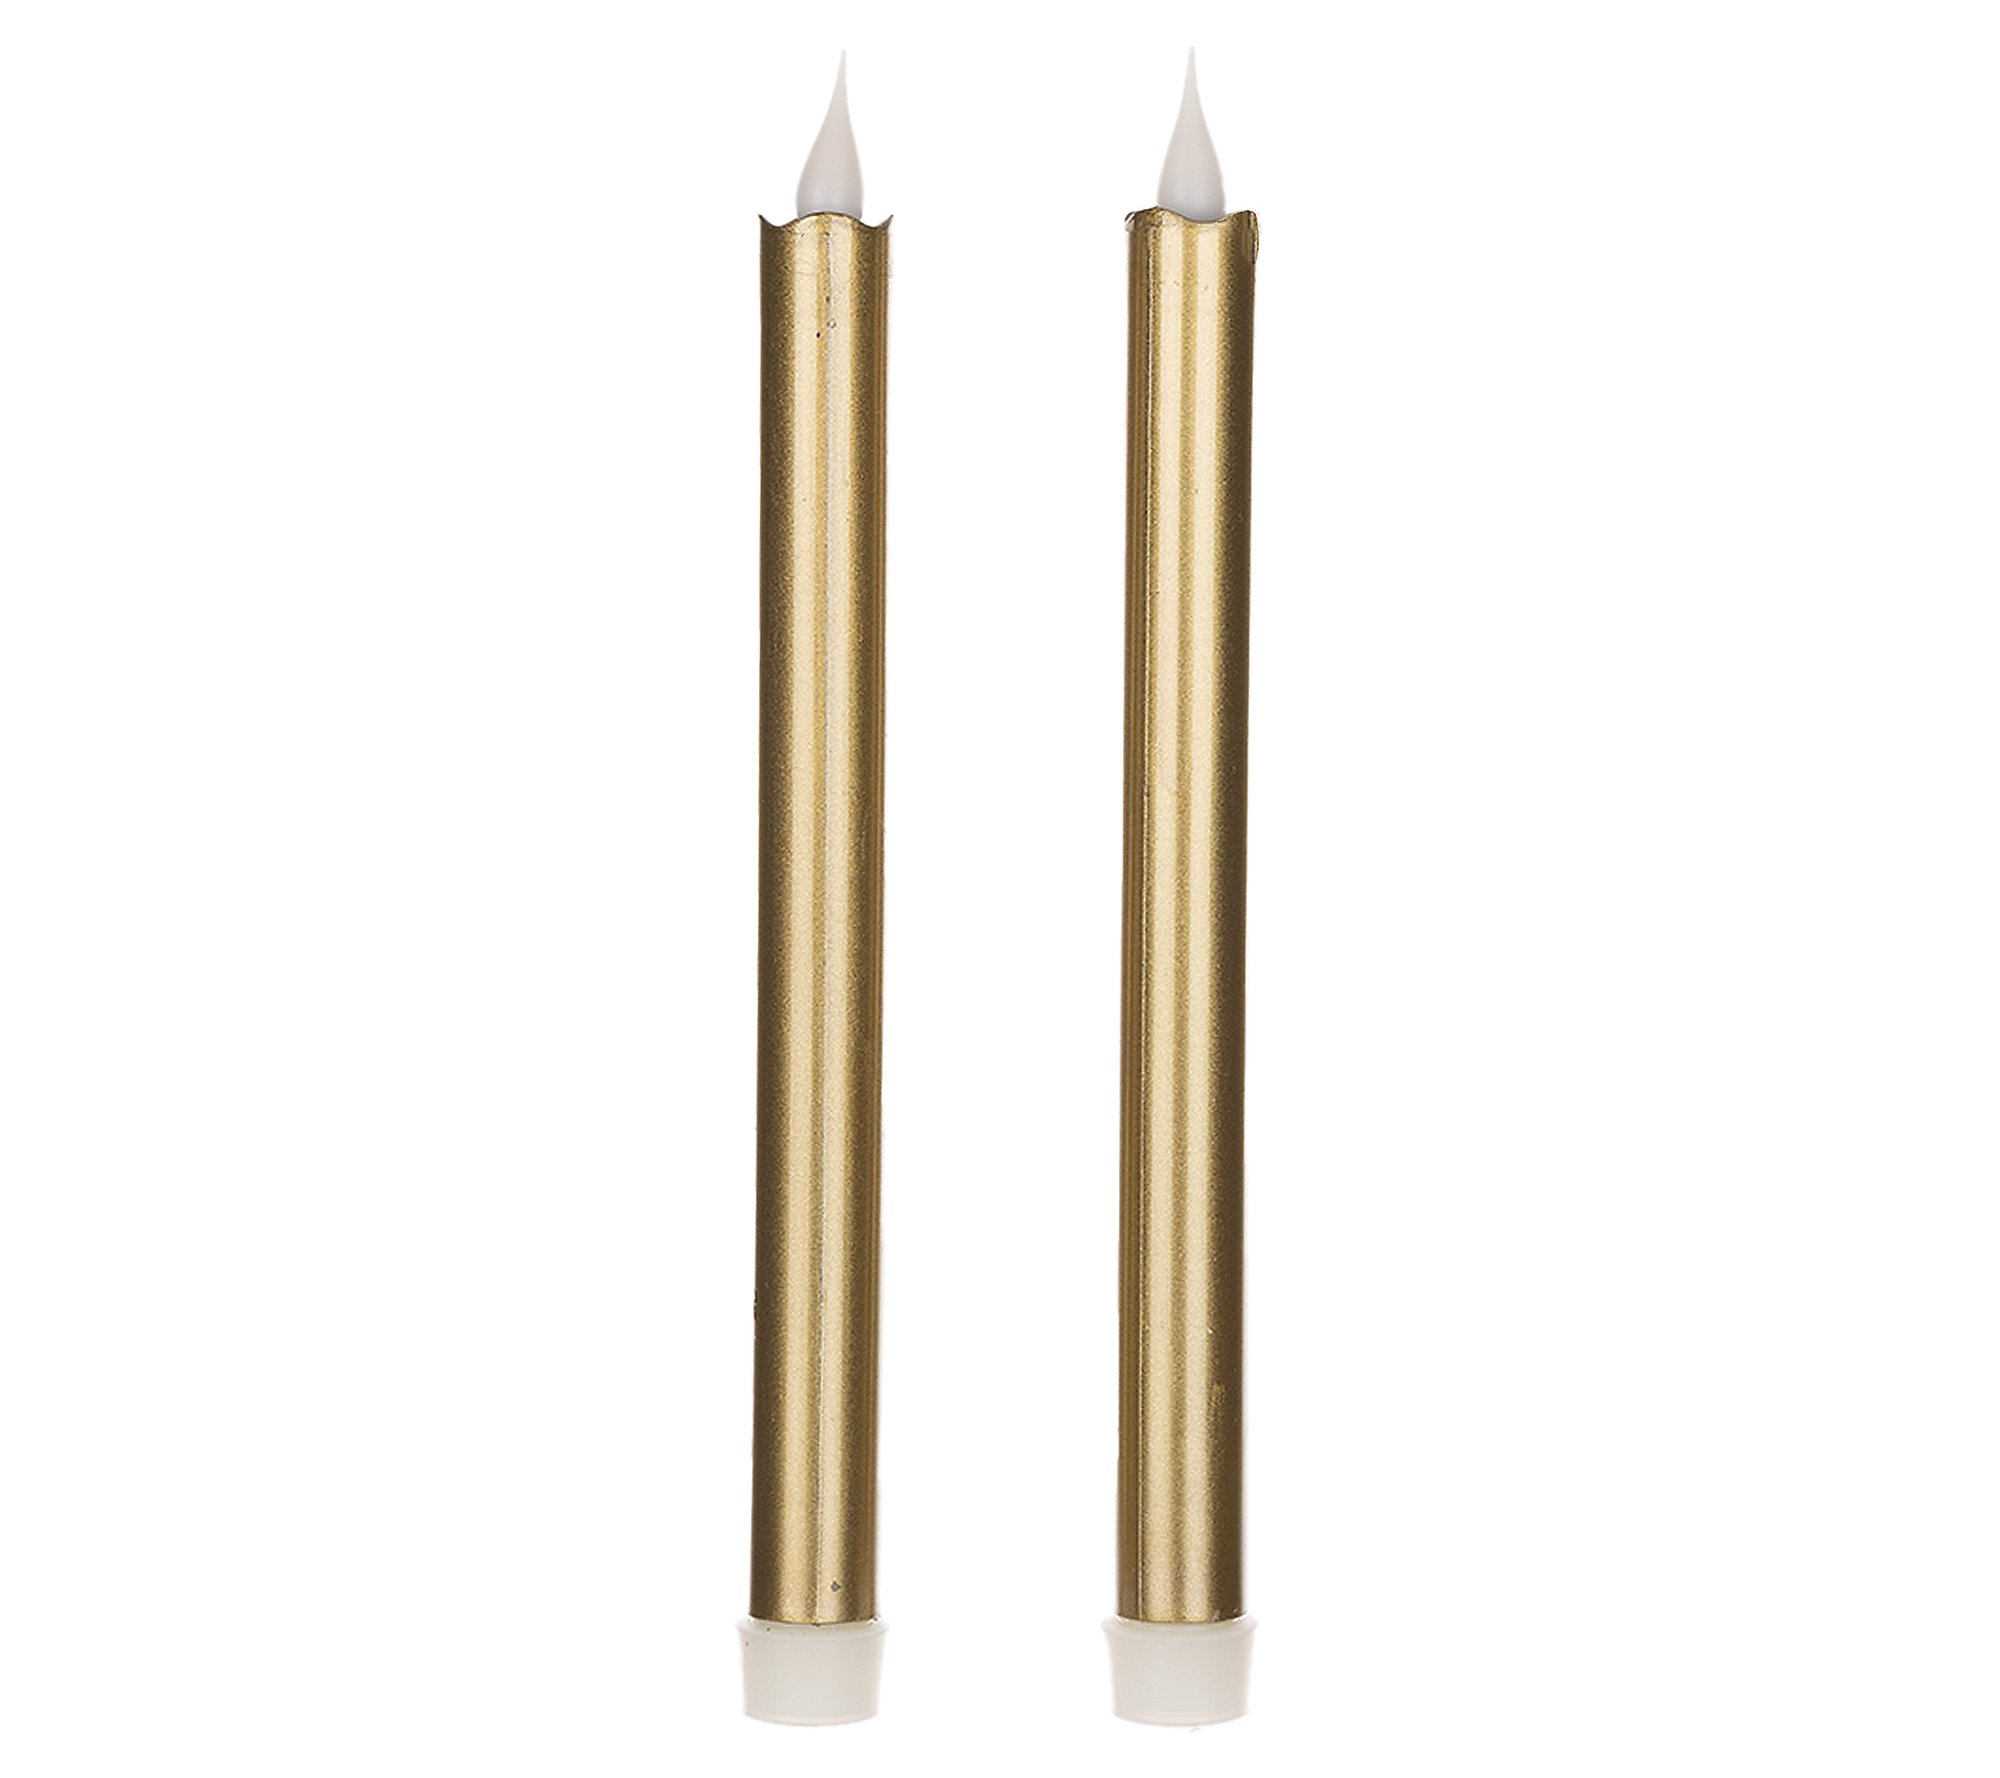 Melrose International 10" Gold LED Taper Candle (Set of 2)